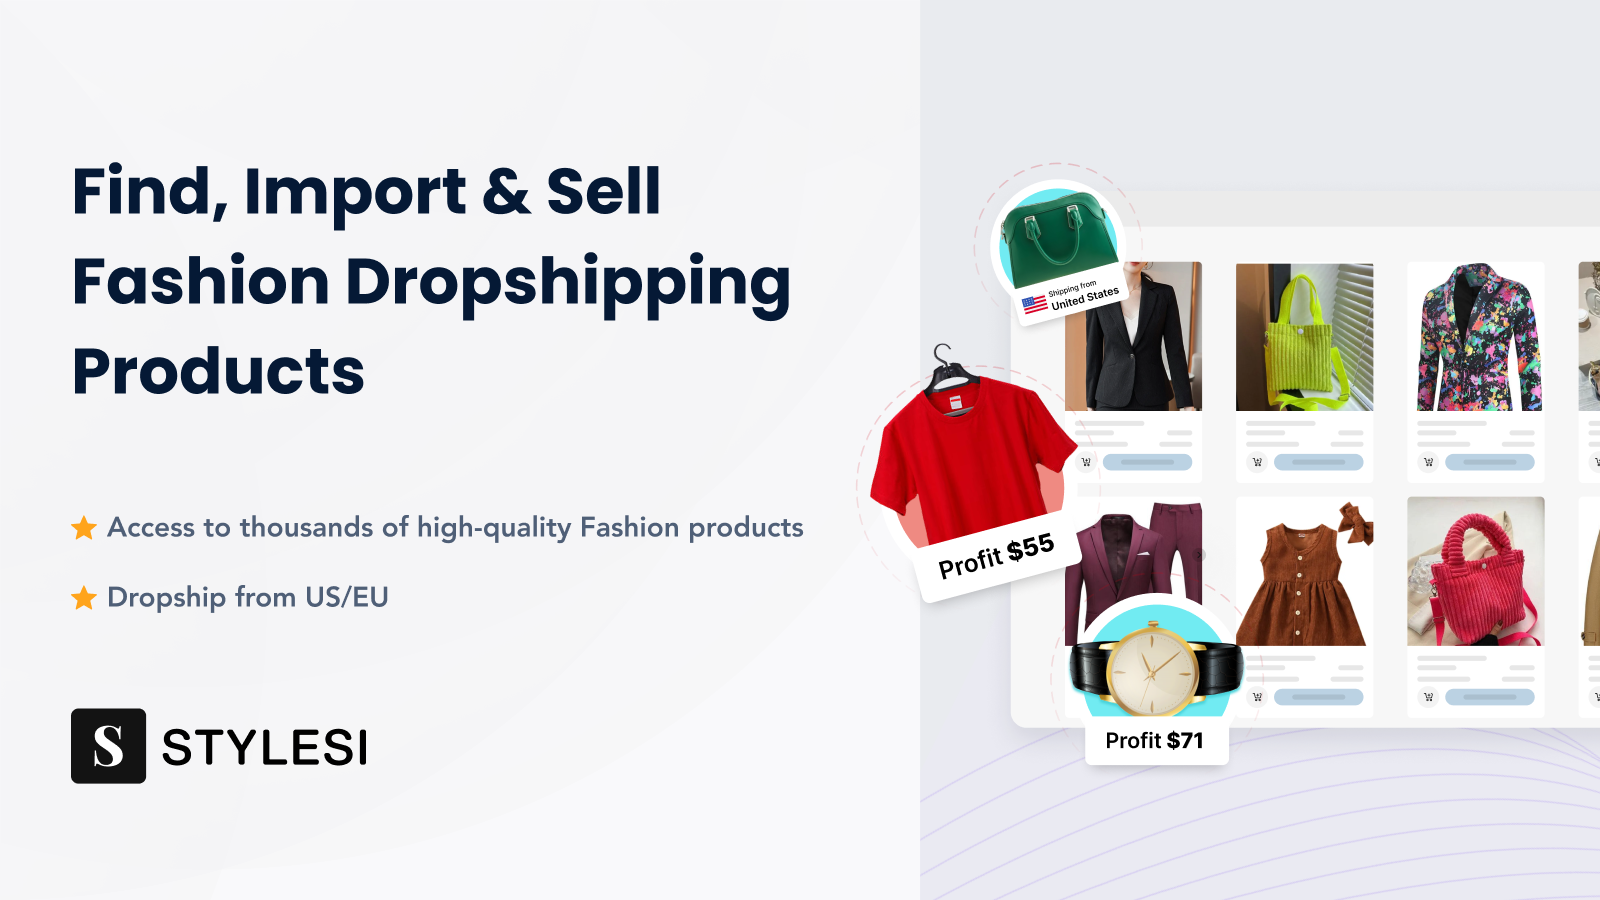 Finden, importieren und verkaufen Sie Mode-Dropshipping-Produkte